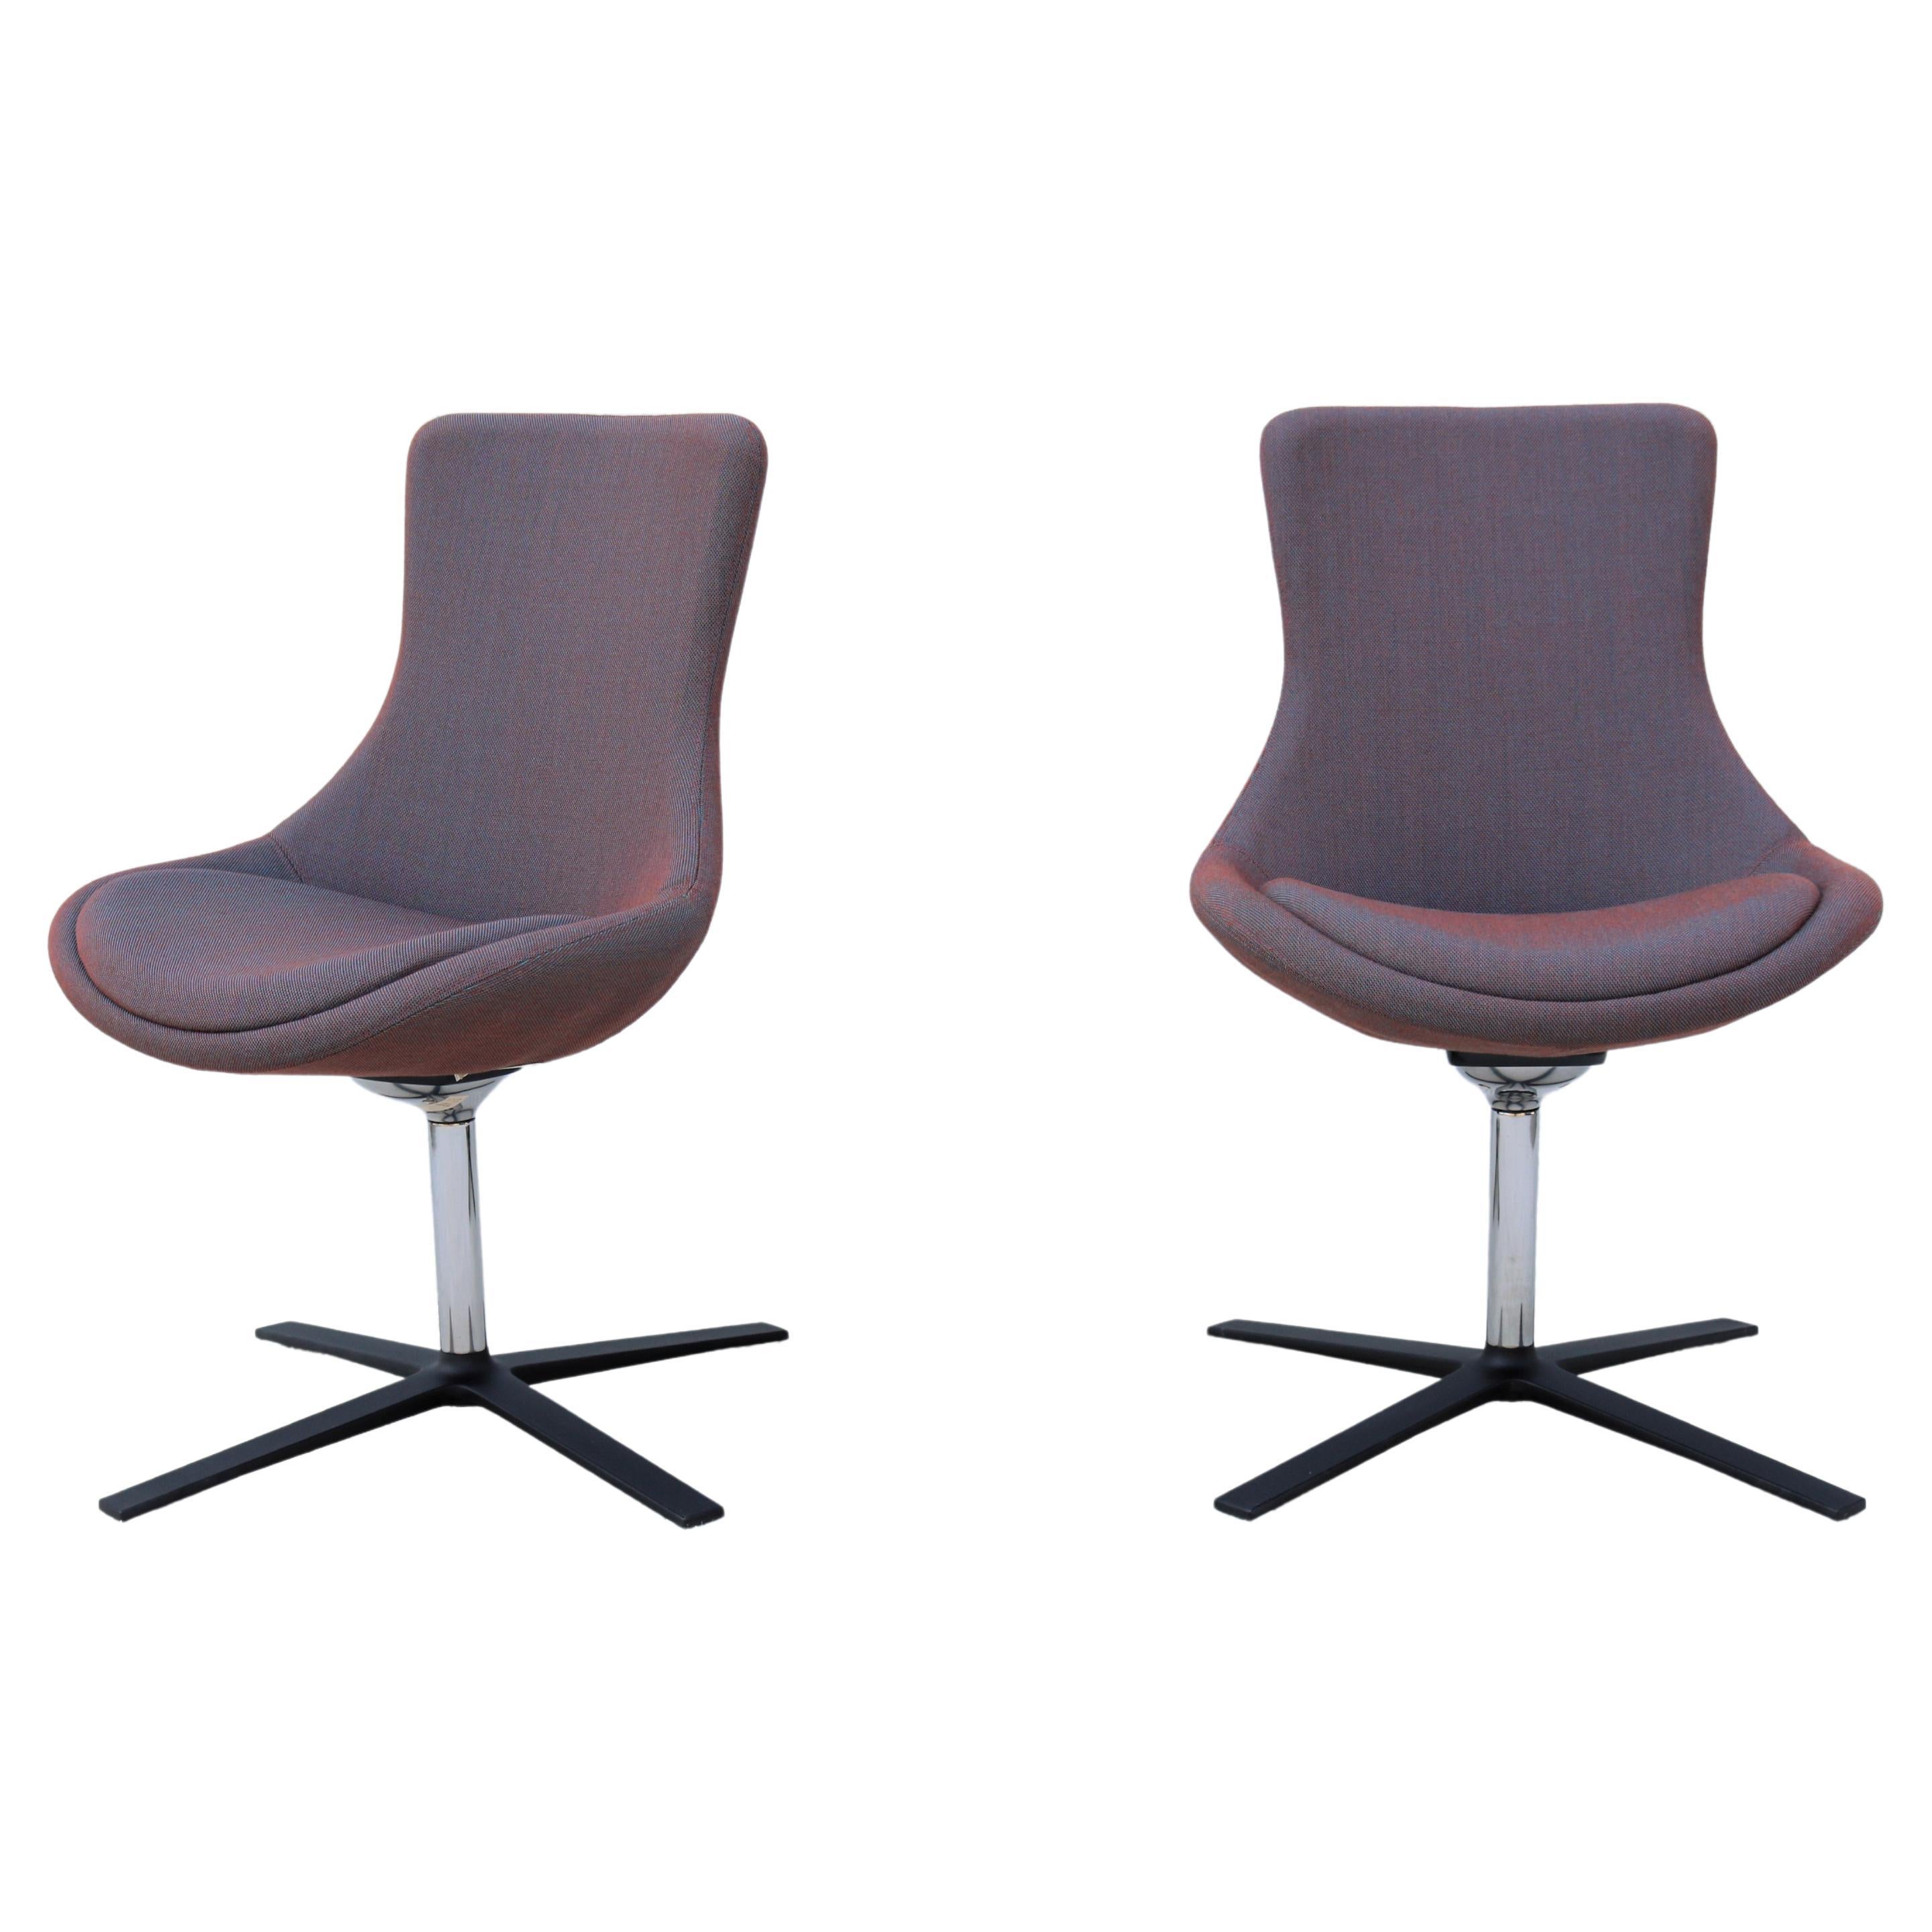 Paire de chaises d'appoint pour invités Orangebox Bloom, modernes et contemporaines, pivotantes et inclinables en vente